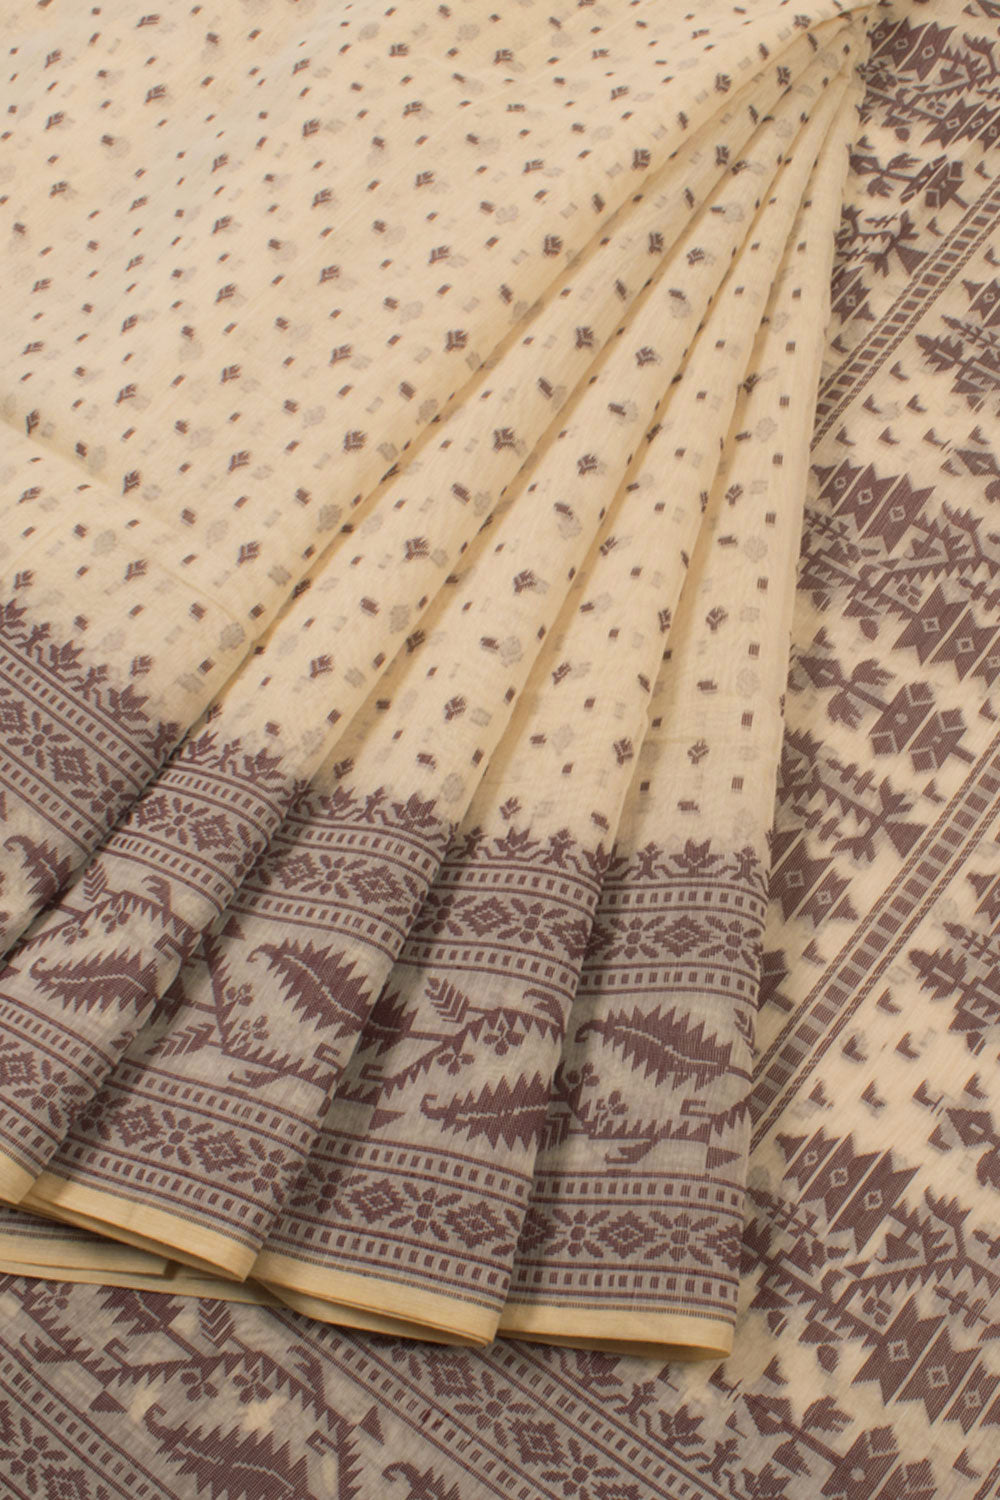 Handloom Dhakai Style Cotton Saree 10057778